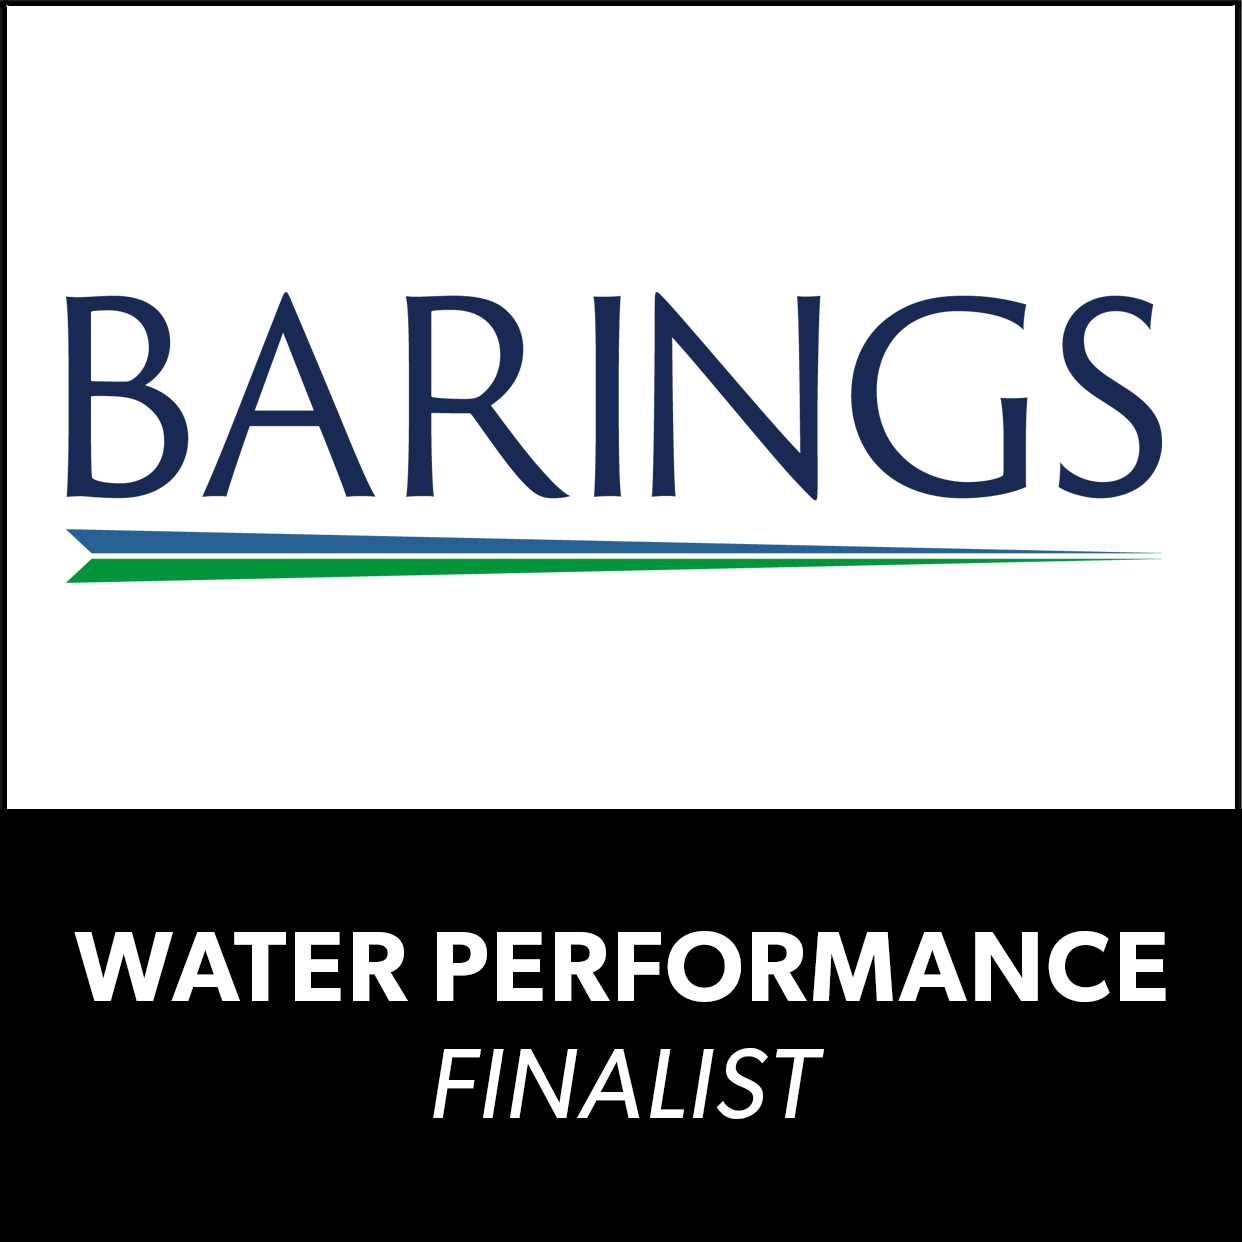 WP_Barings_logo_award-finalist.png